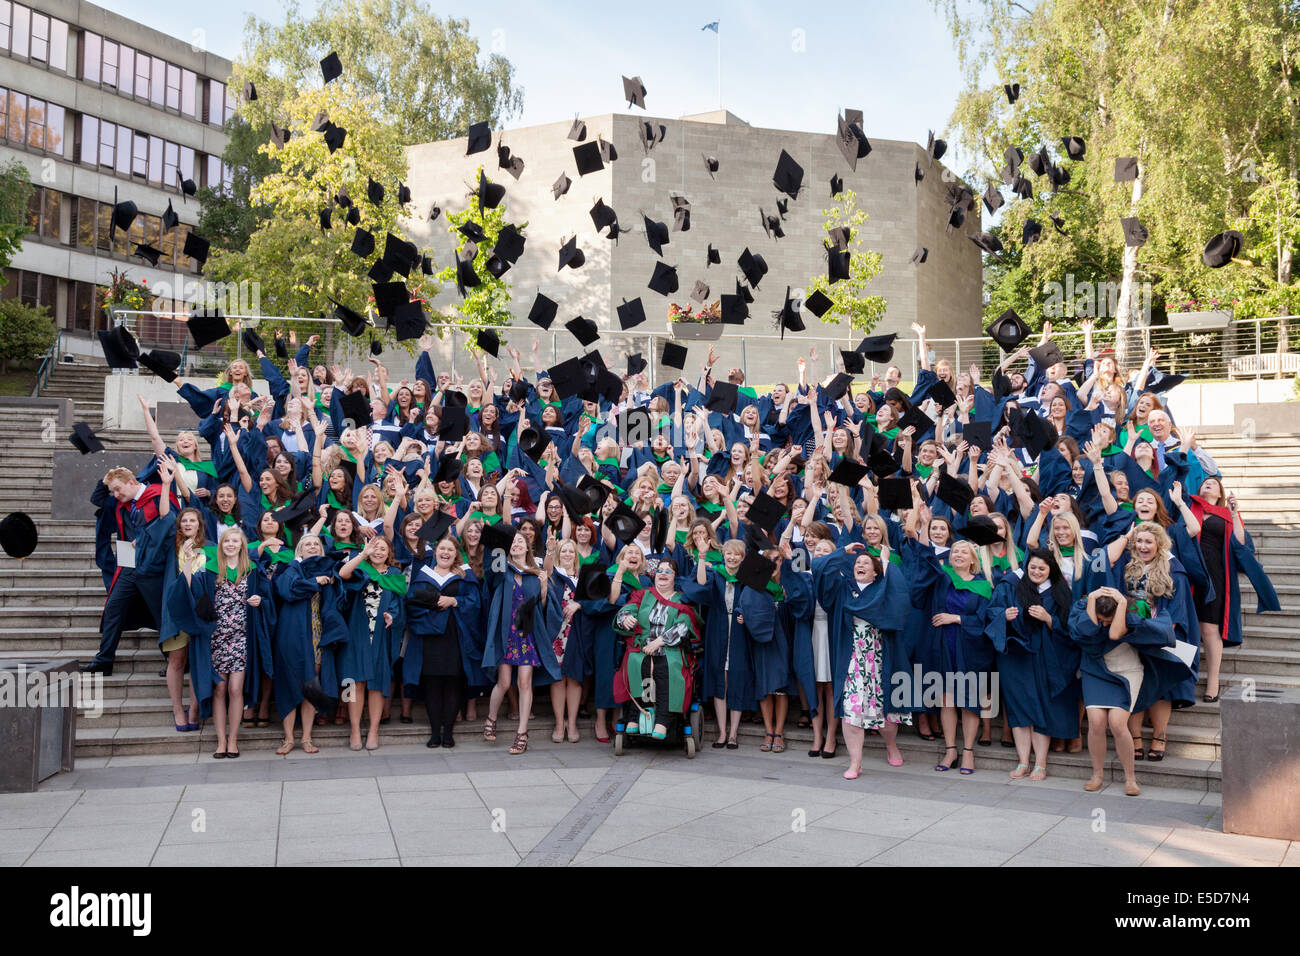 Abschlussklasse Absolventen ihre Hüte in die Luft zu werfen, am Abschlusstag, UEA (University of East Anglia), Norwich England UK Stockfoto